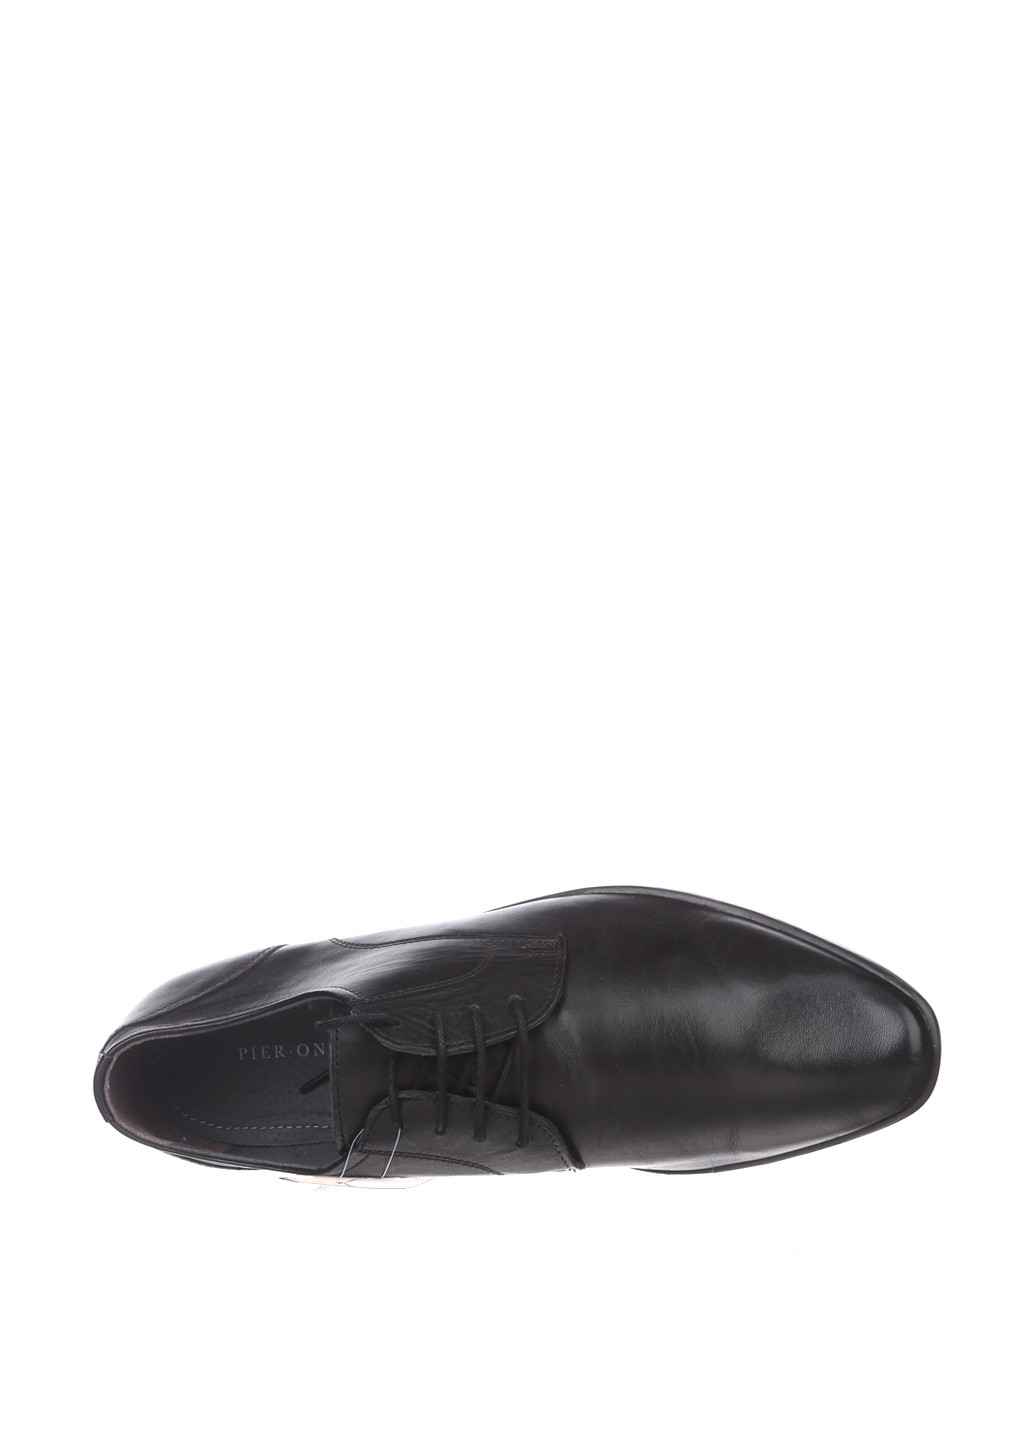 Черные кэжуал туфли Pier One на шнурках